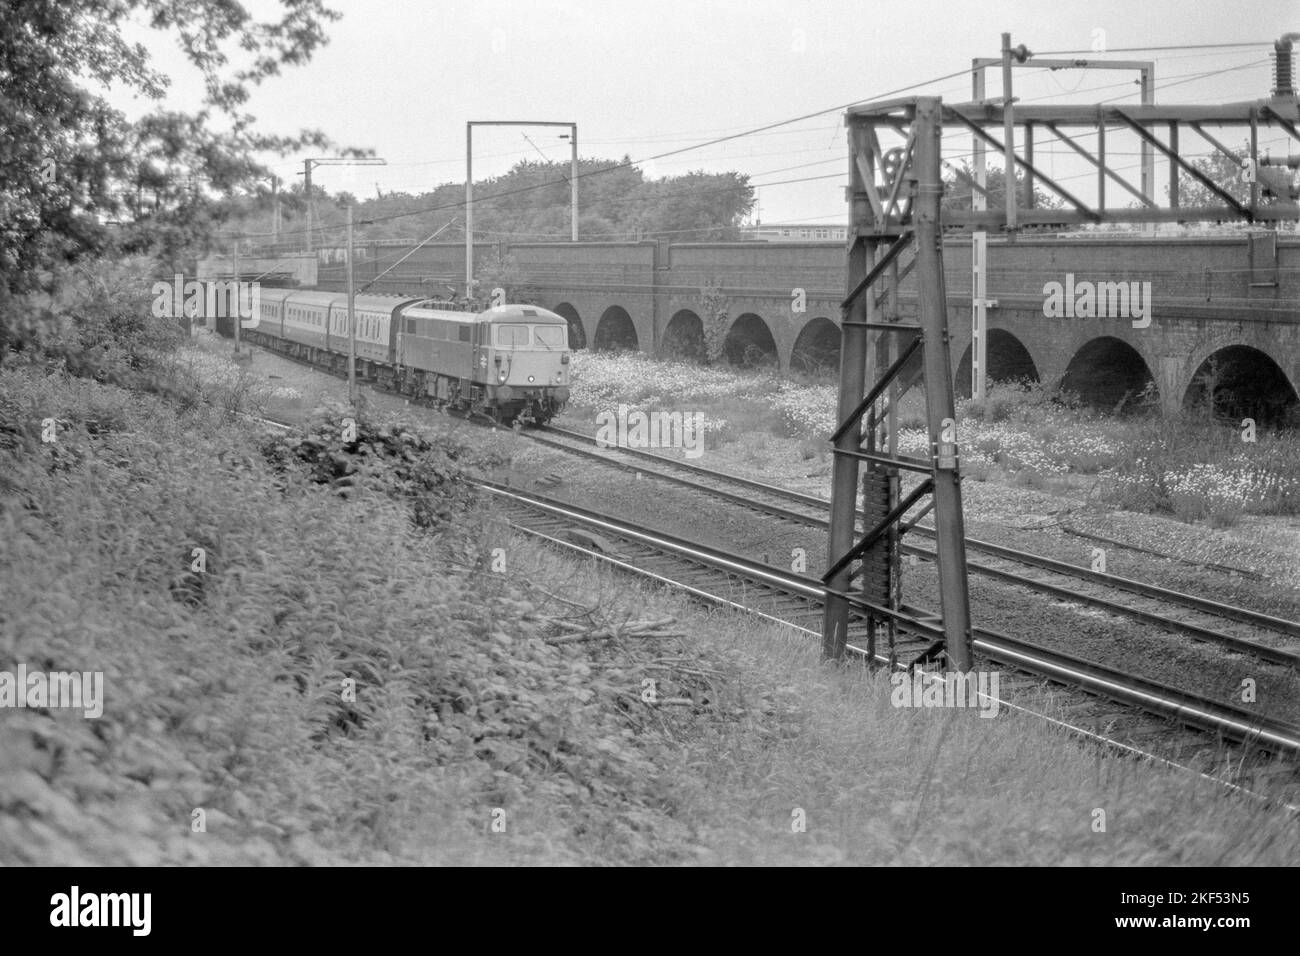 Original britische Eisenbahn-E-Lokomotive der Baureihe 87 im Personenverkehr in der Nähe von Rugby Ende 1970s Anfang 1980s Stockfoto